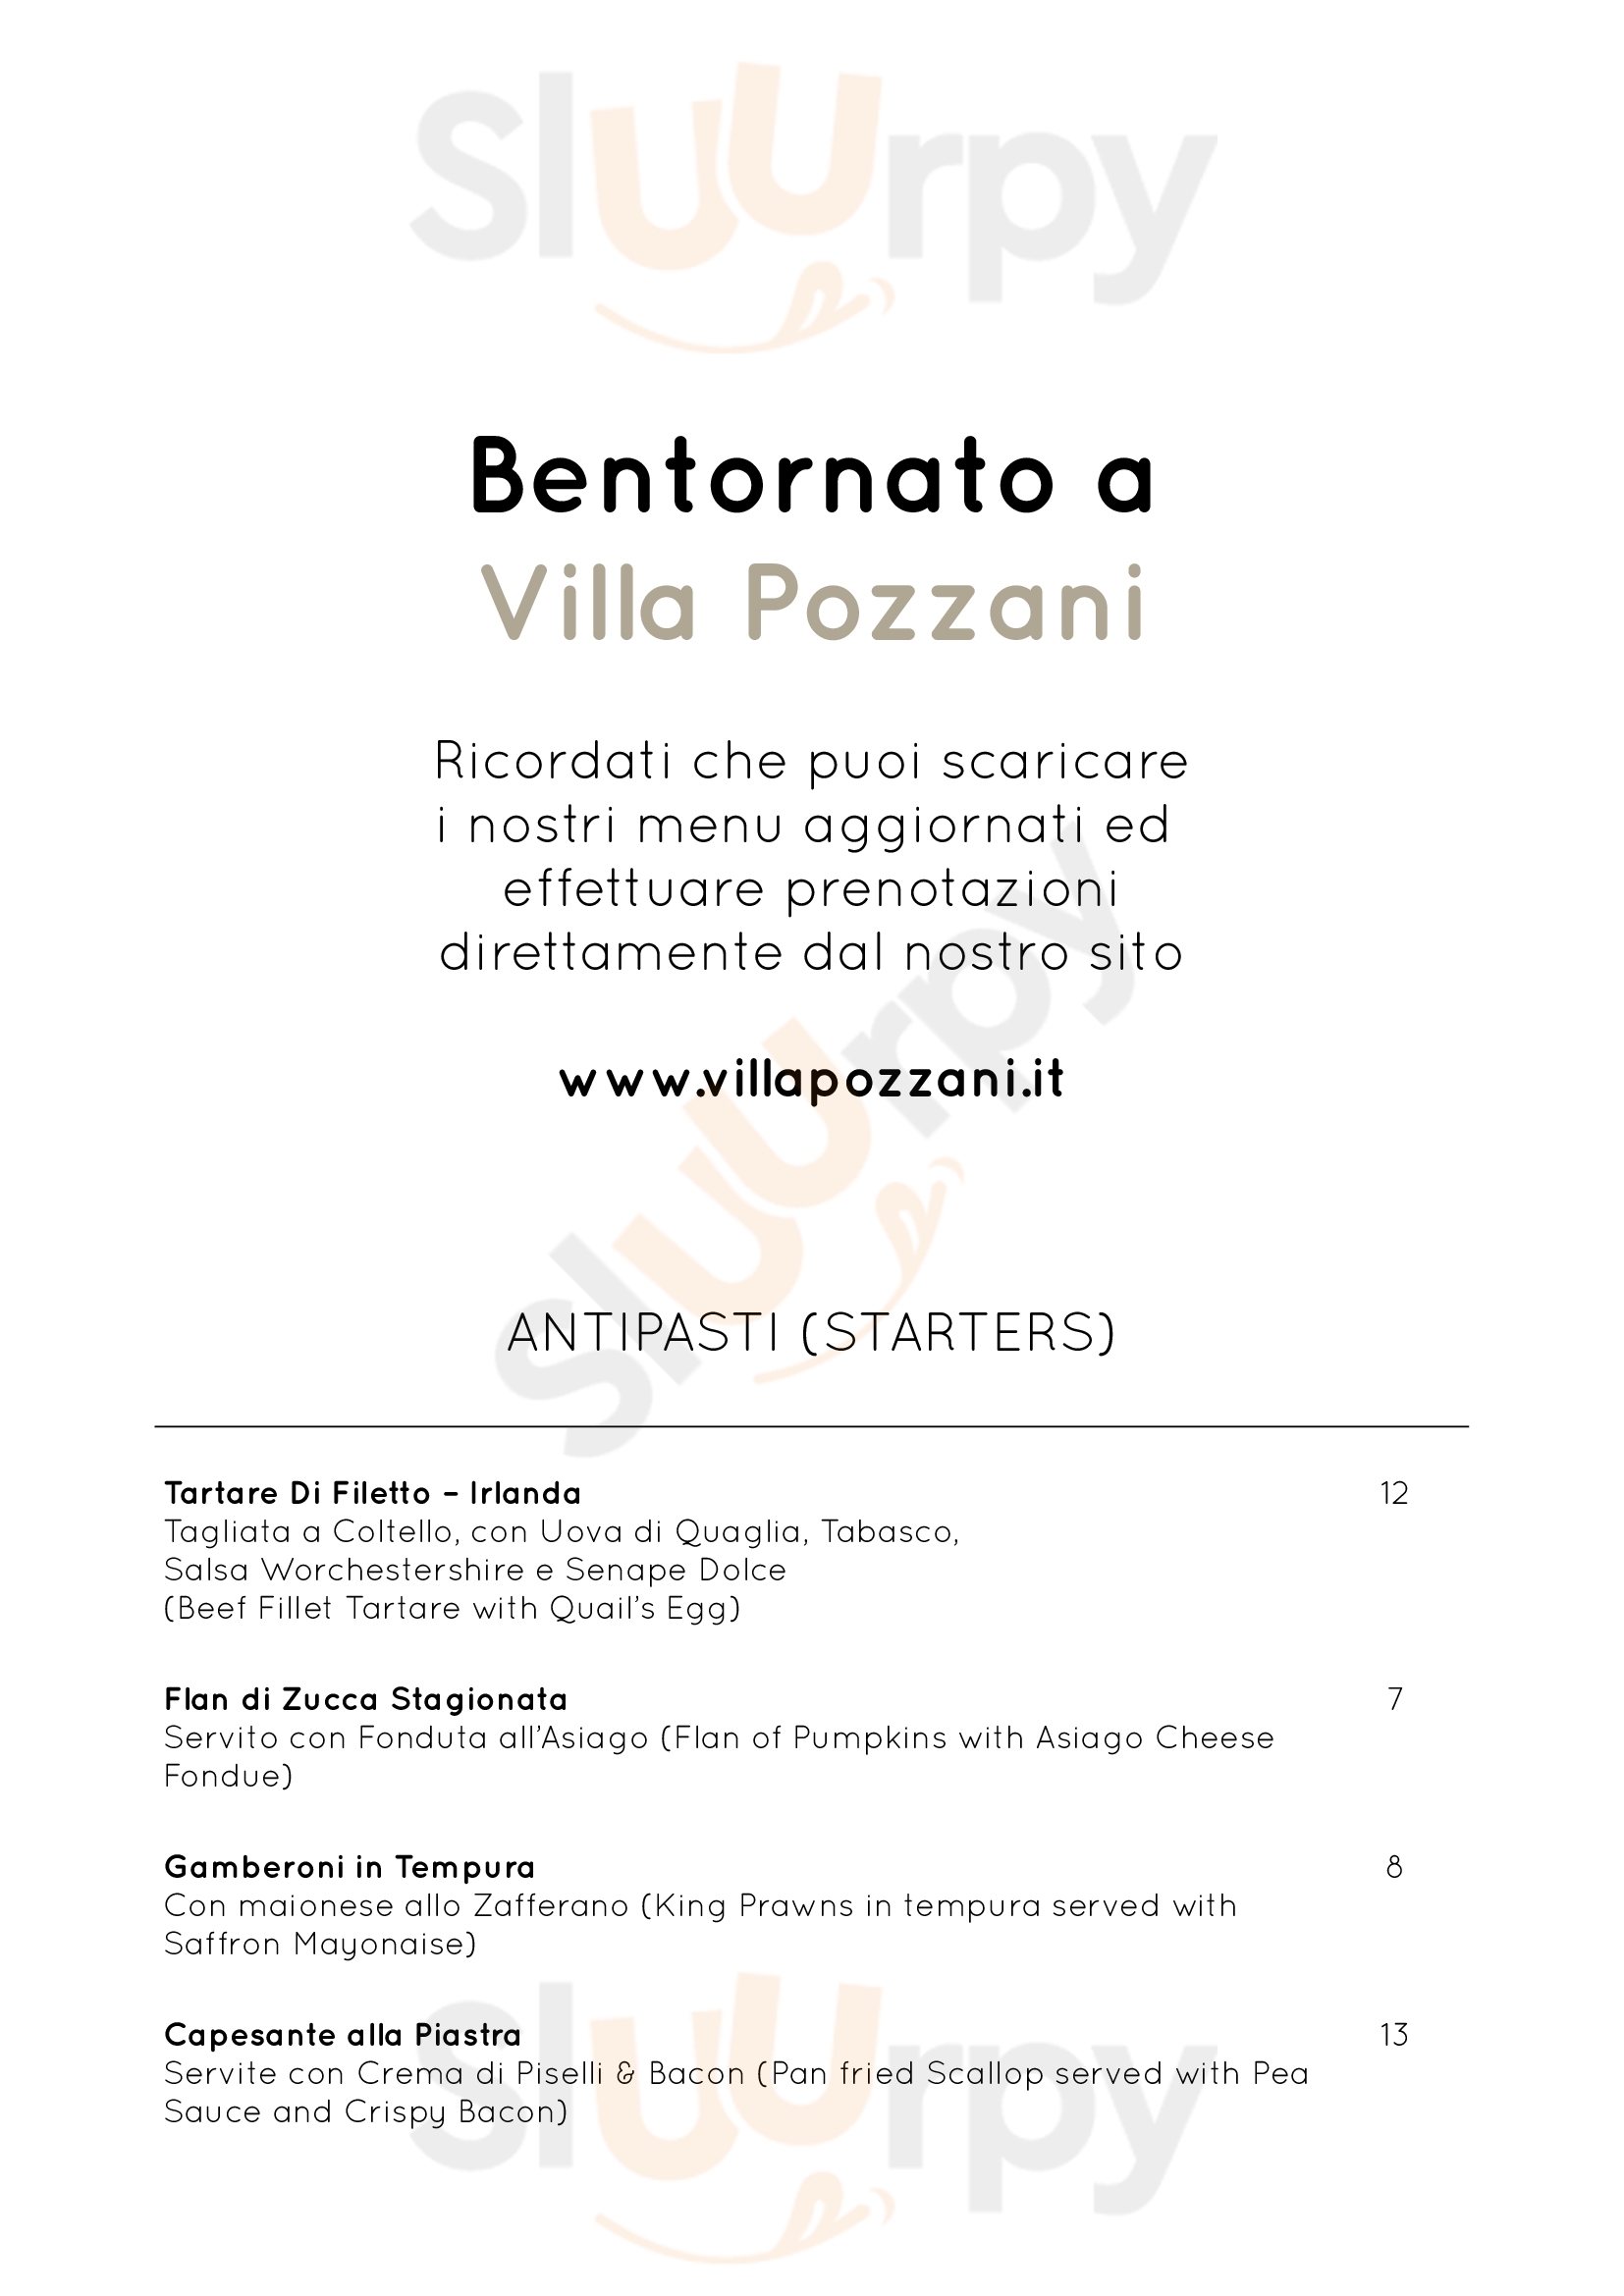 Villa Pozzani - Ristorante & Bar Malo menù 1 pagina